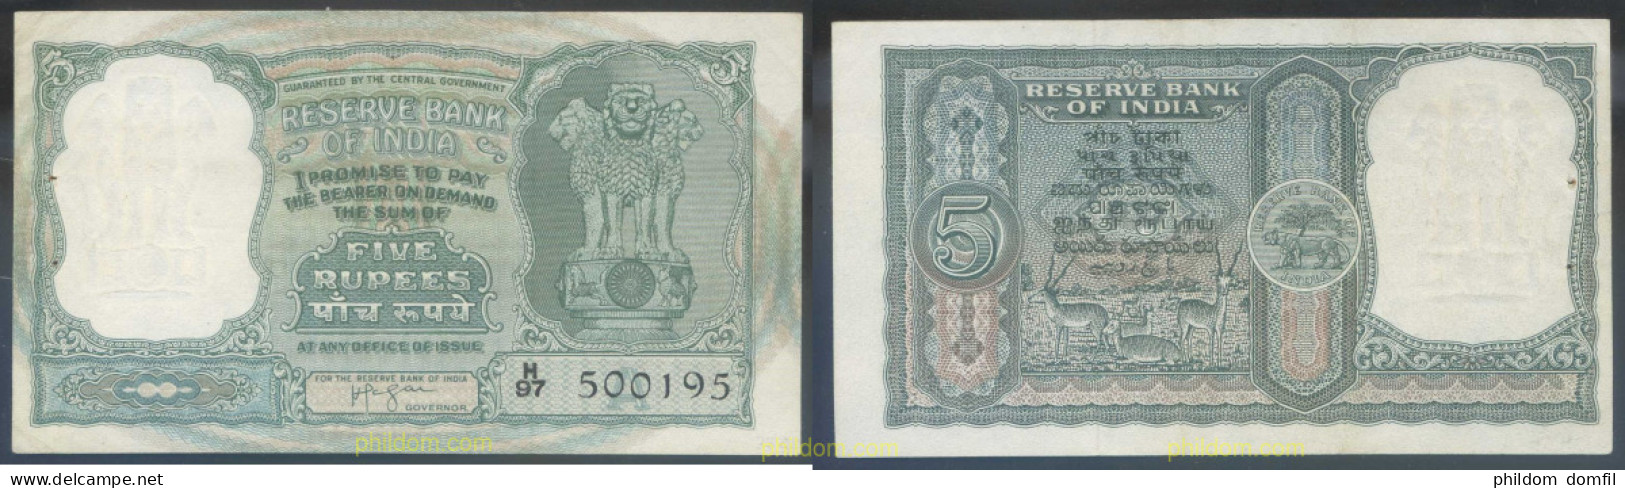 4609 INDIA 1957 INDIA 5 RUPEES 1957/62 - India